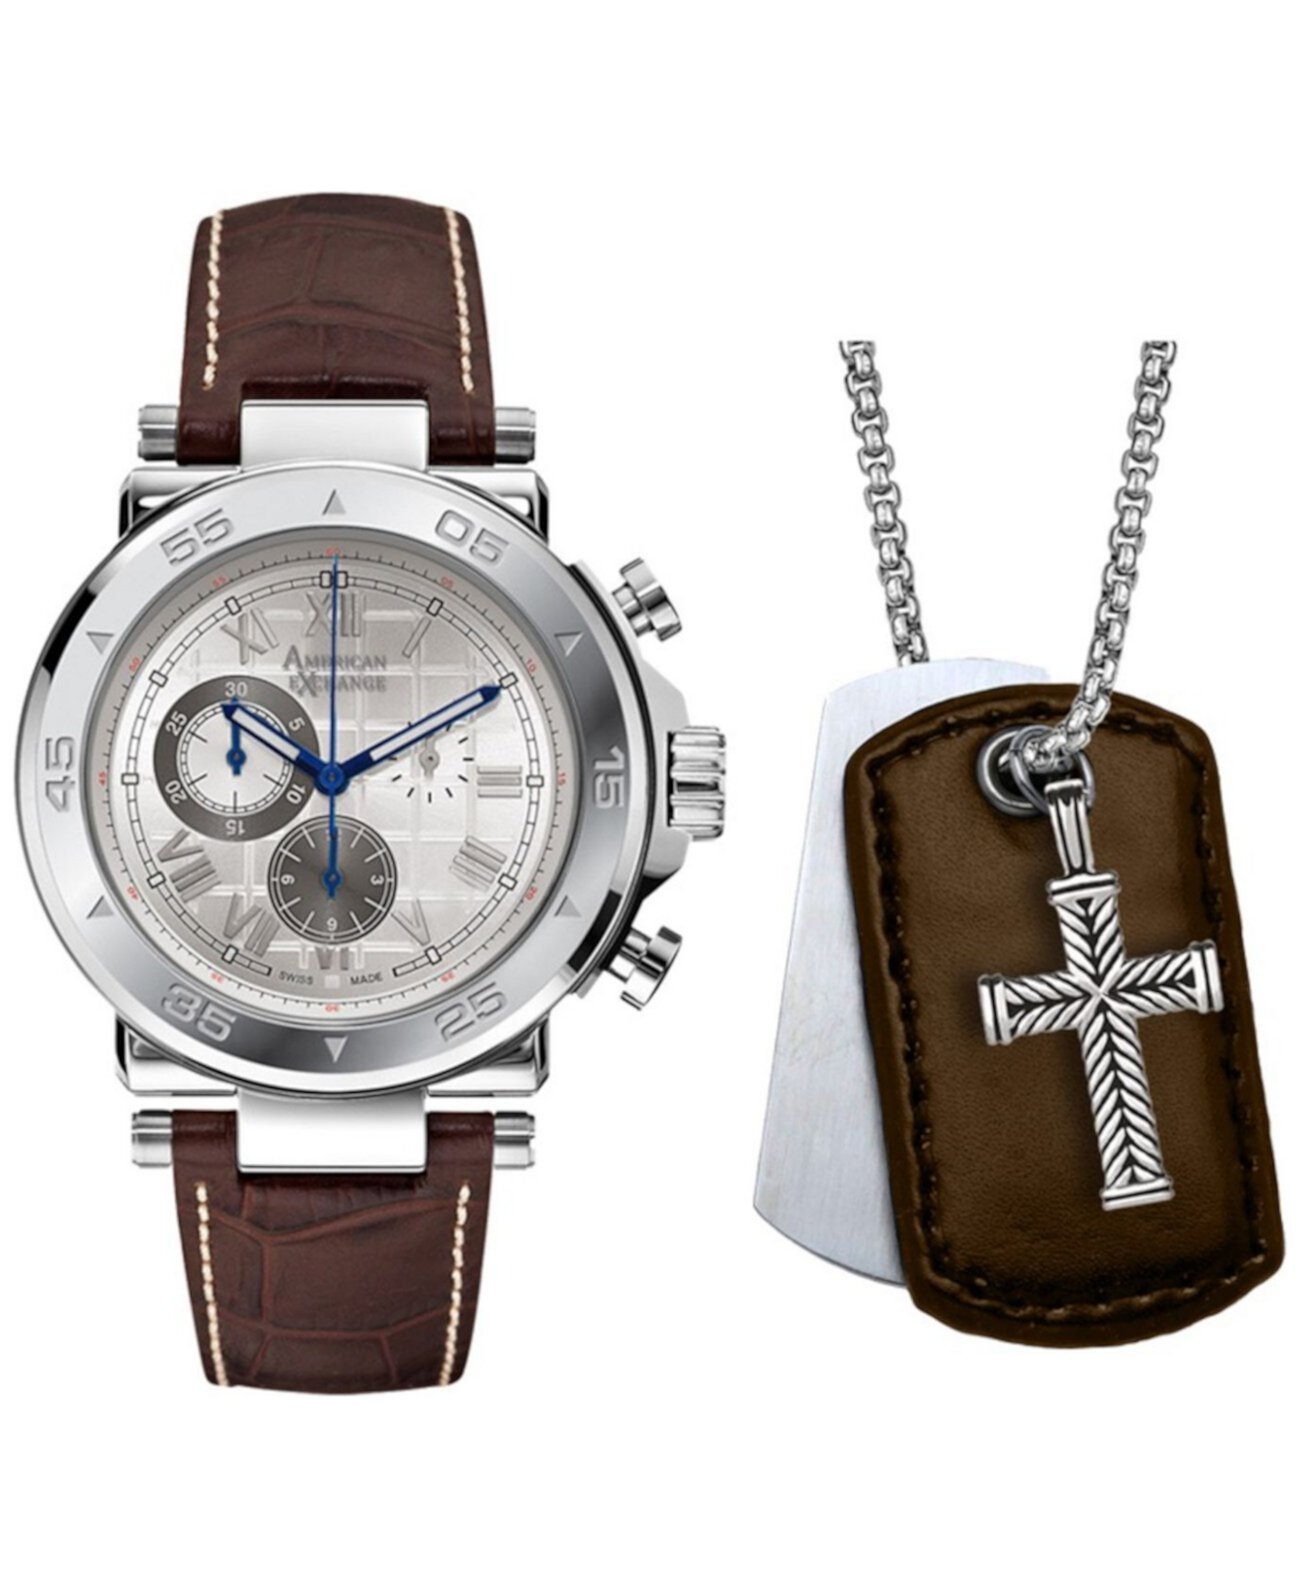 Мужские часы с коричневым кожаным ремешком 44 мм в подарочном наборе American Exchange